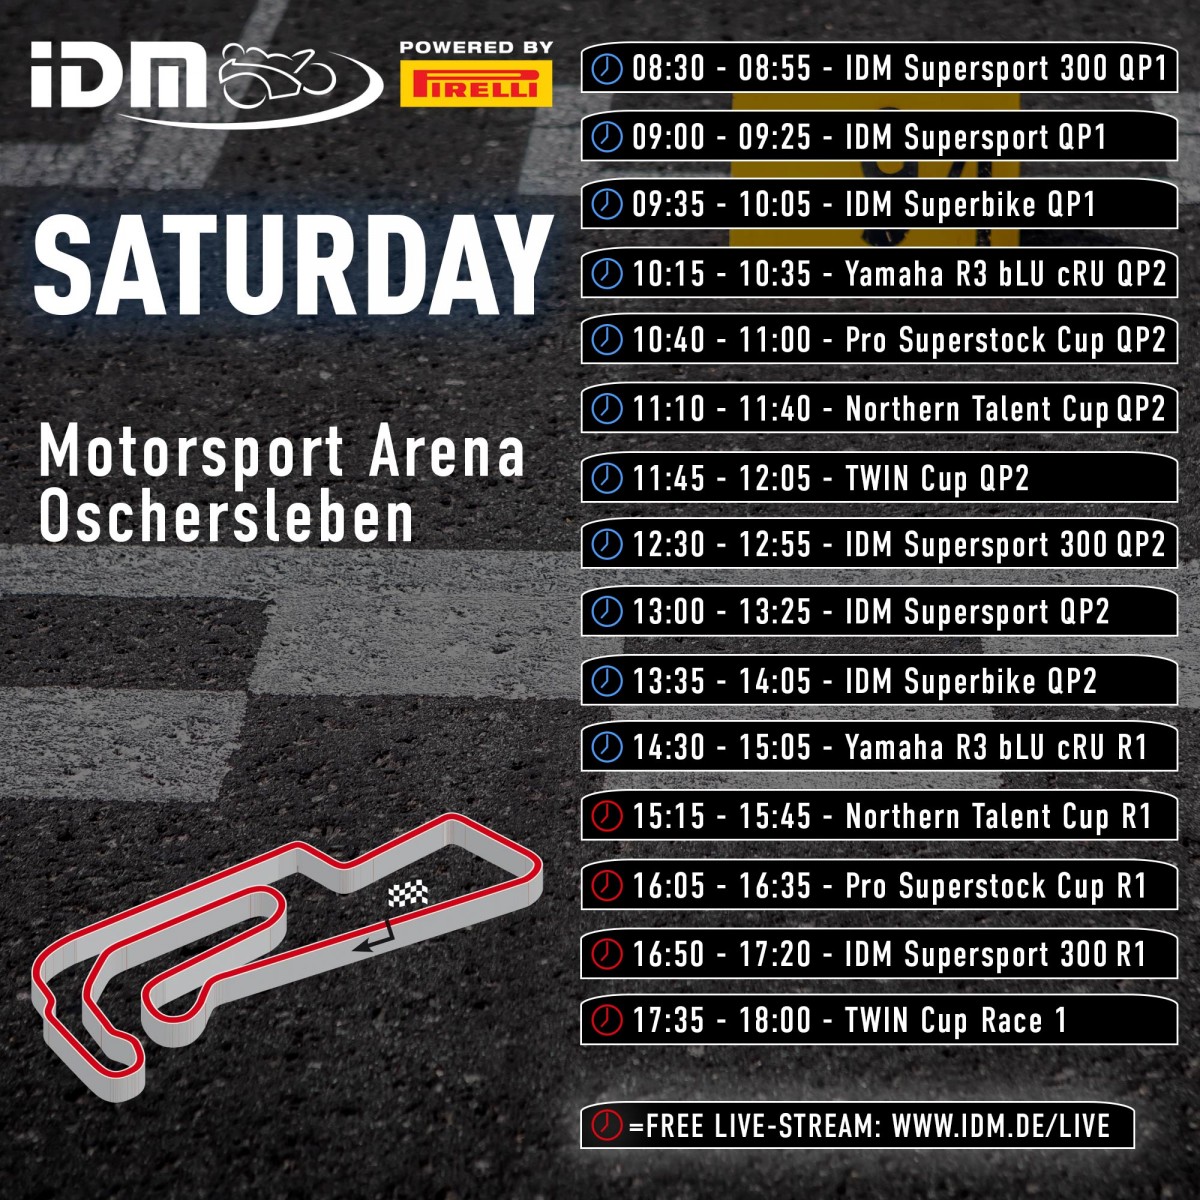 Расписание 2 этапа IDM Superbike, Oschersleben - суббота, 21 мая 2022